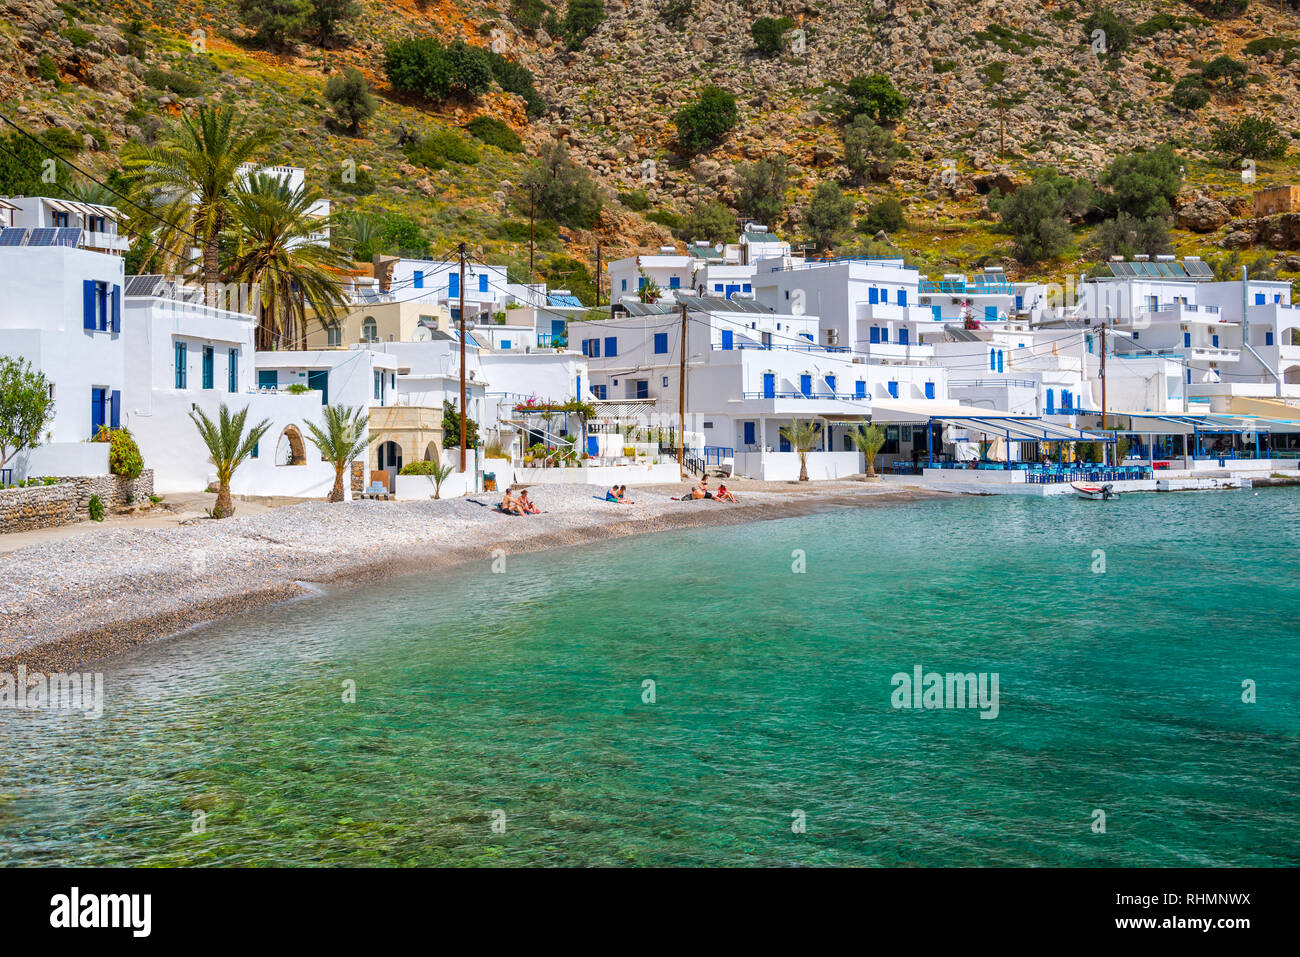 Beach of the scenic village of Loutro  in Crete, Greece Stock Photo